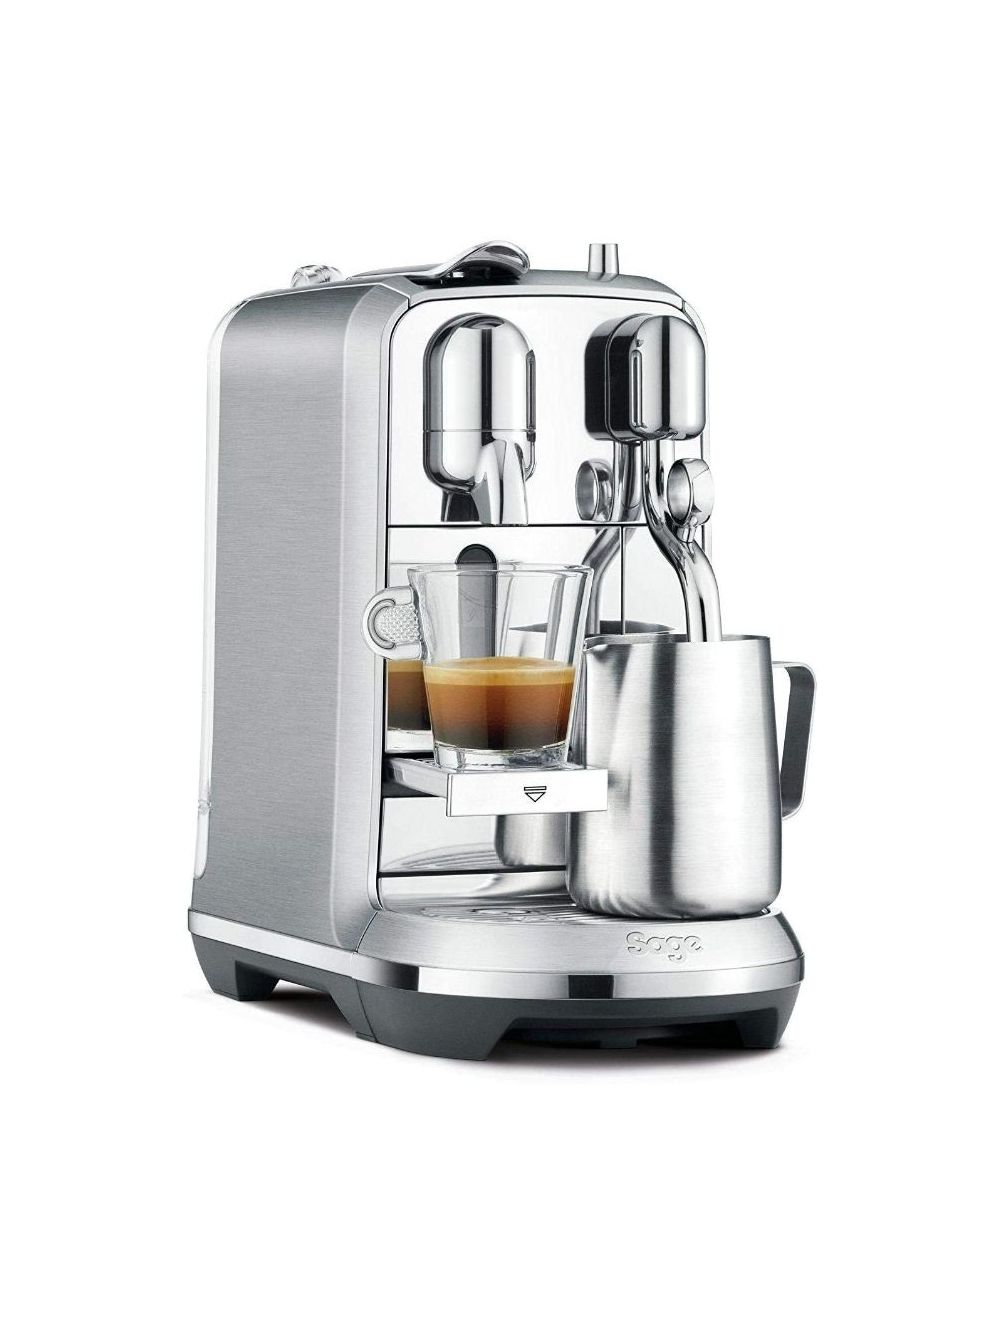 NESPRESSO Creatista Plus J520 Metallic Coffee Machine-J520-ME-ME-NE